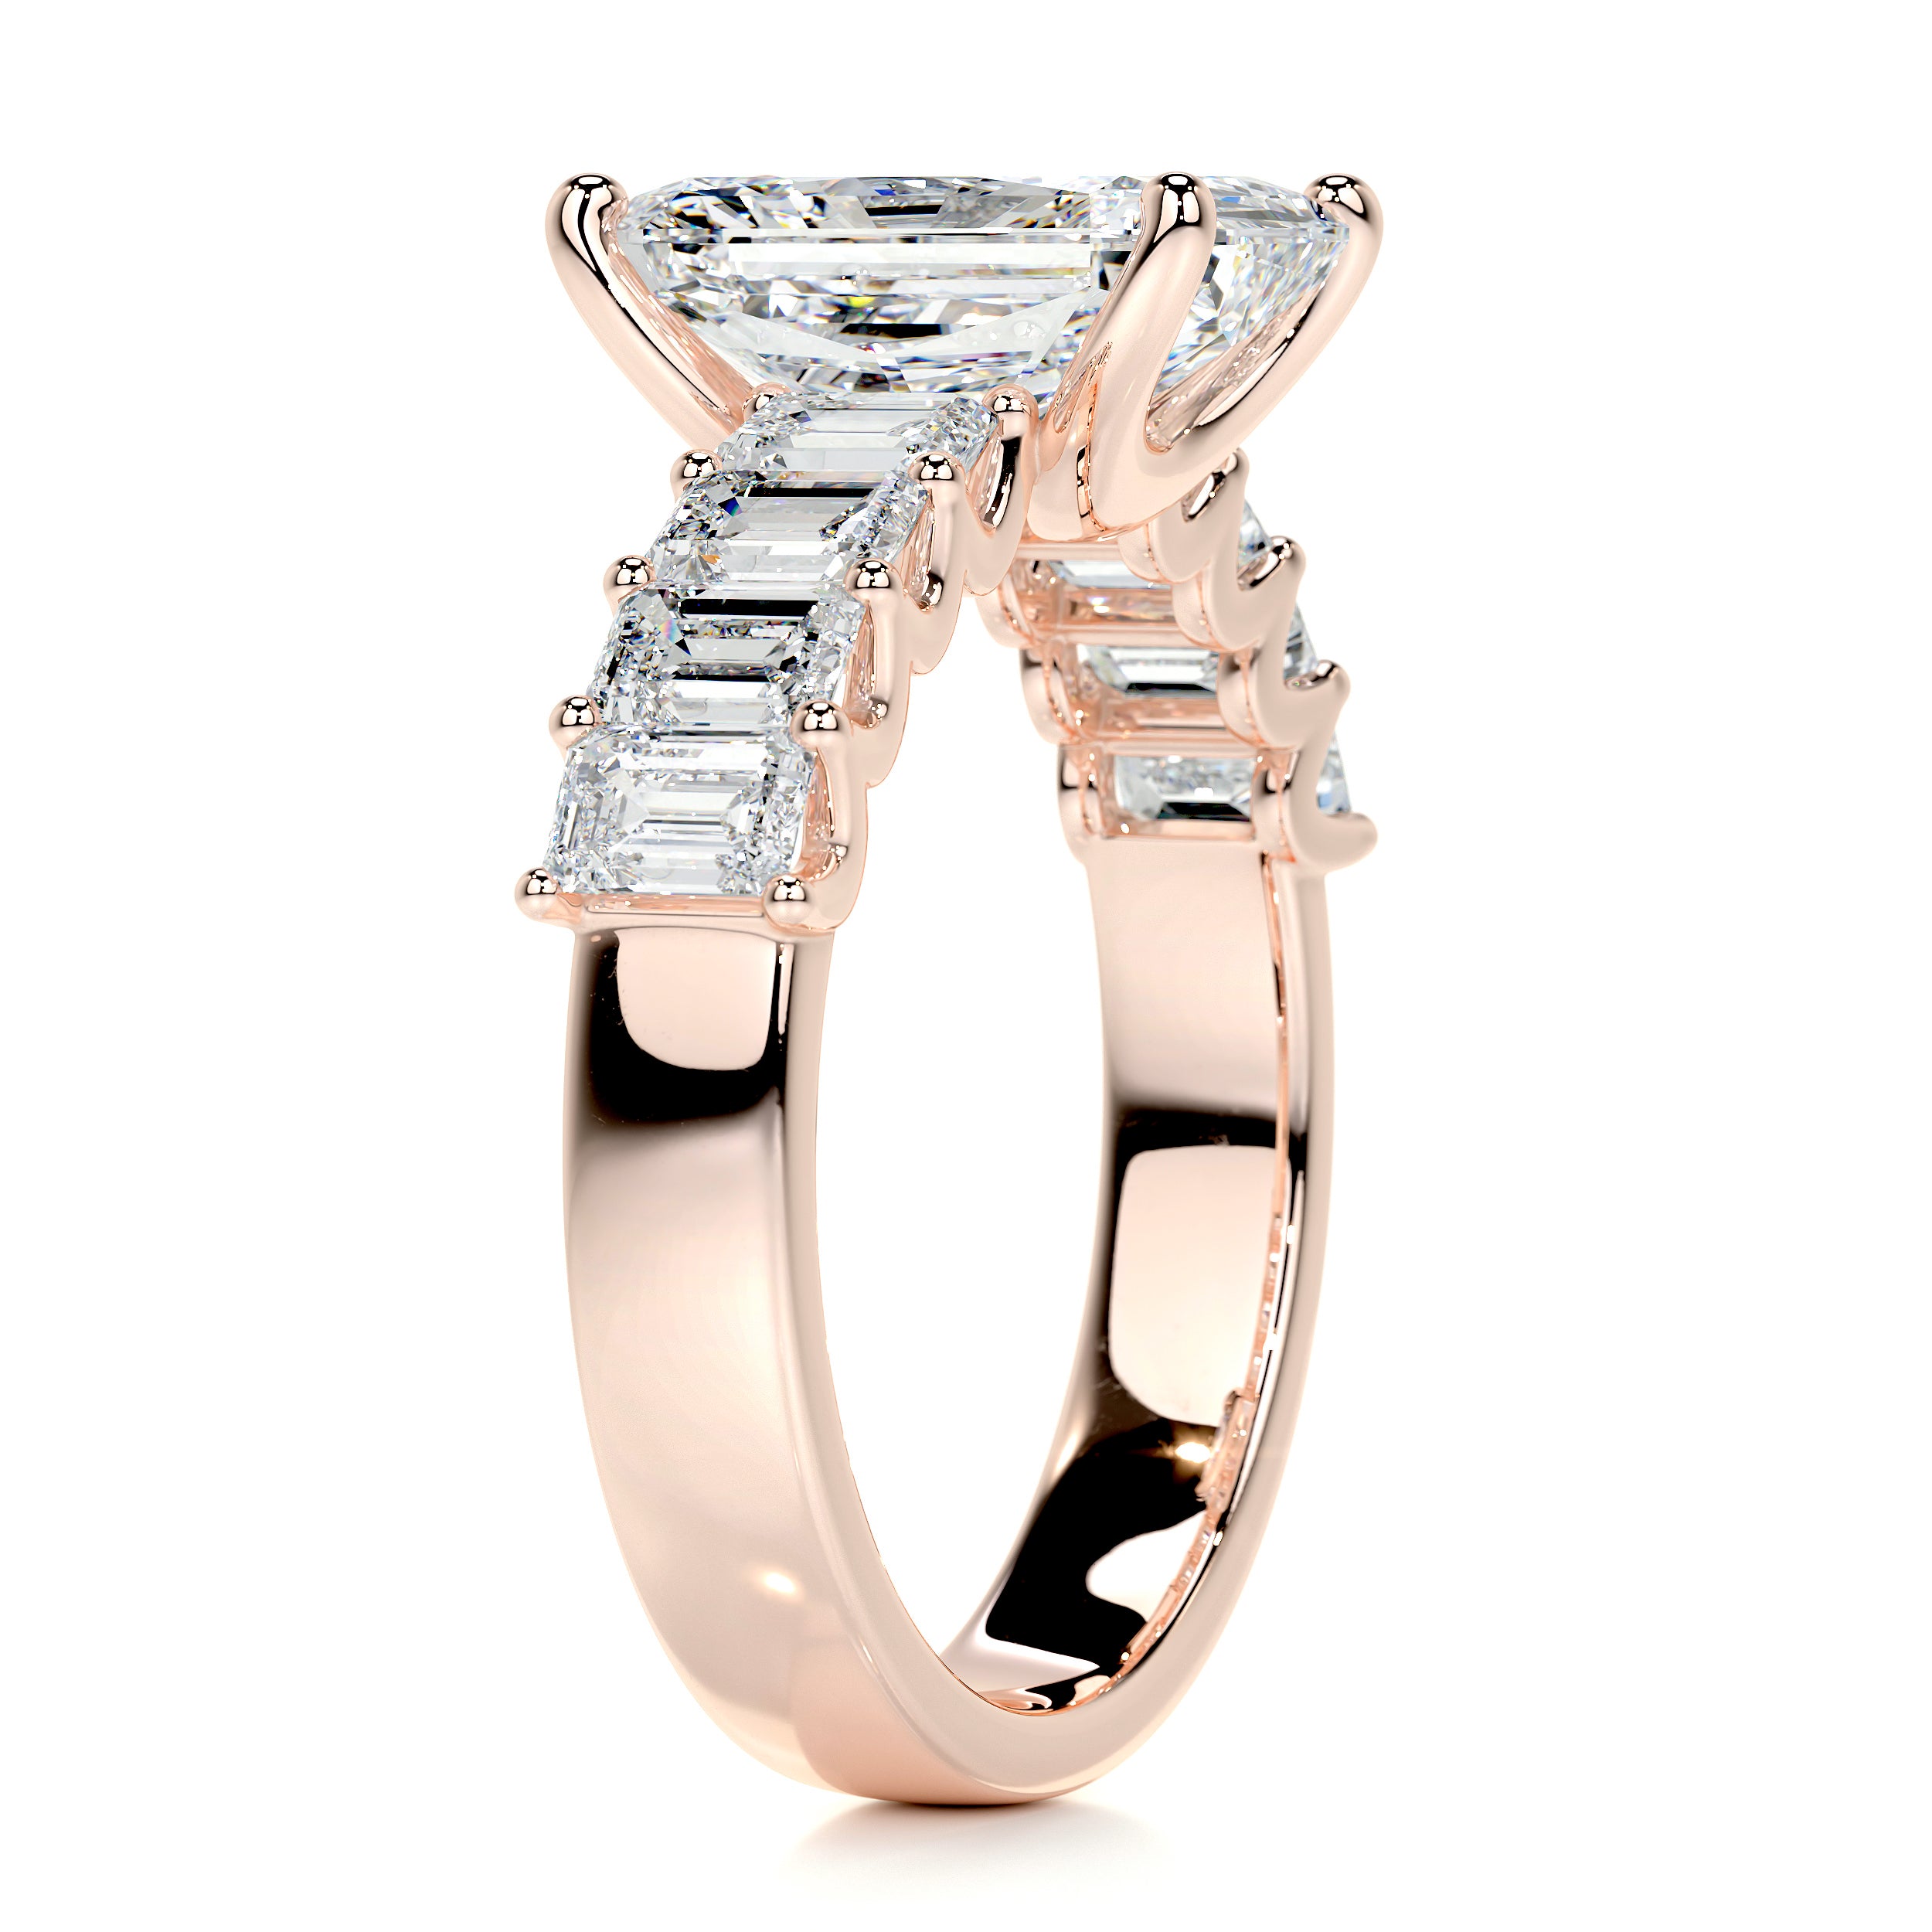 Arabella Diamond Engagement Ring   (5 Carat) -14K Rose Gold